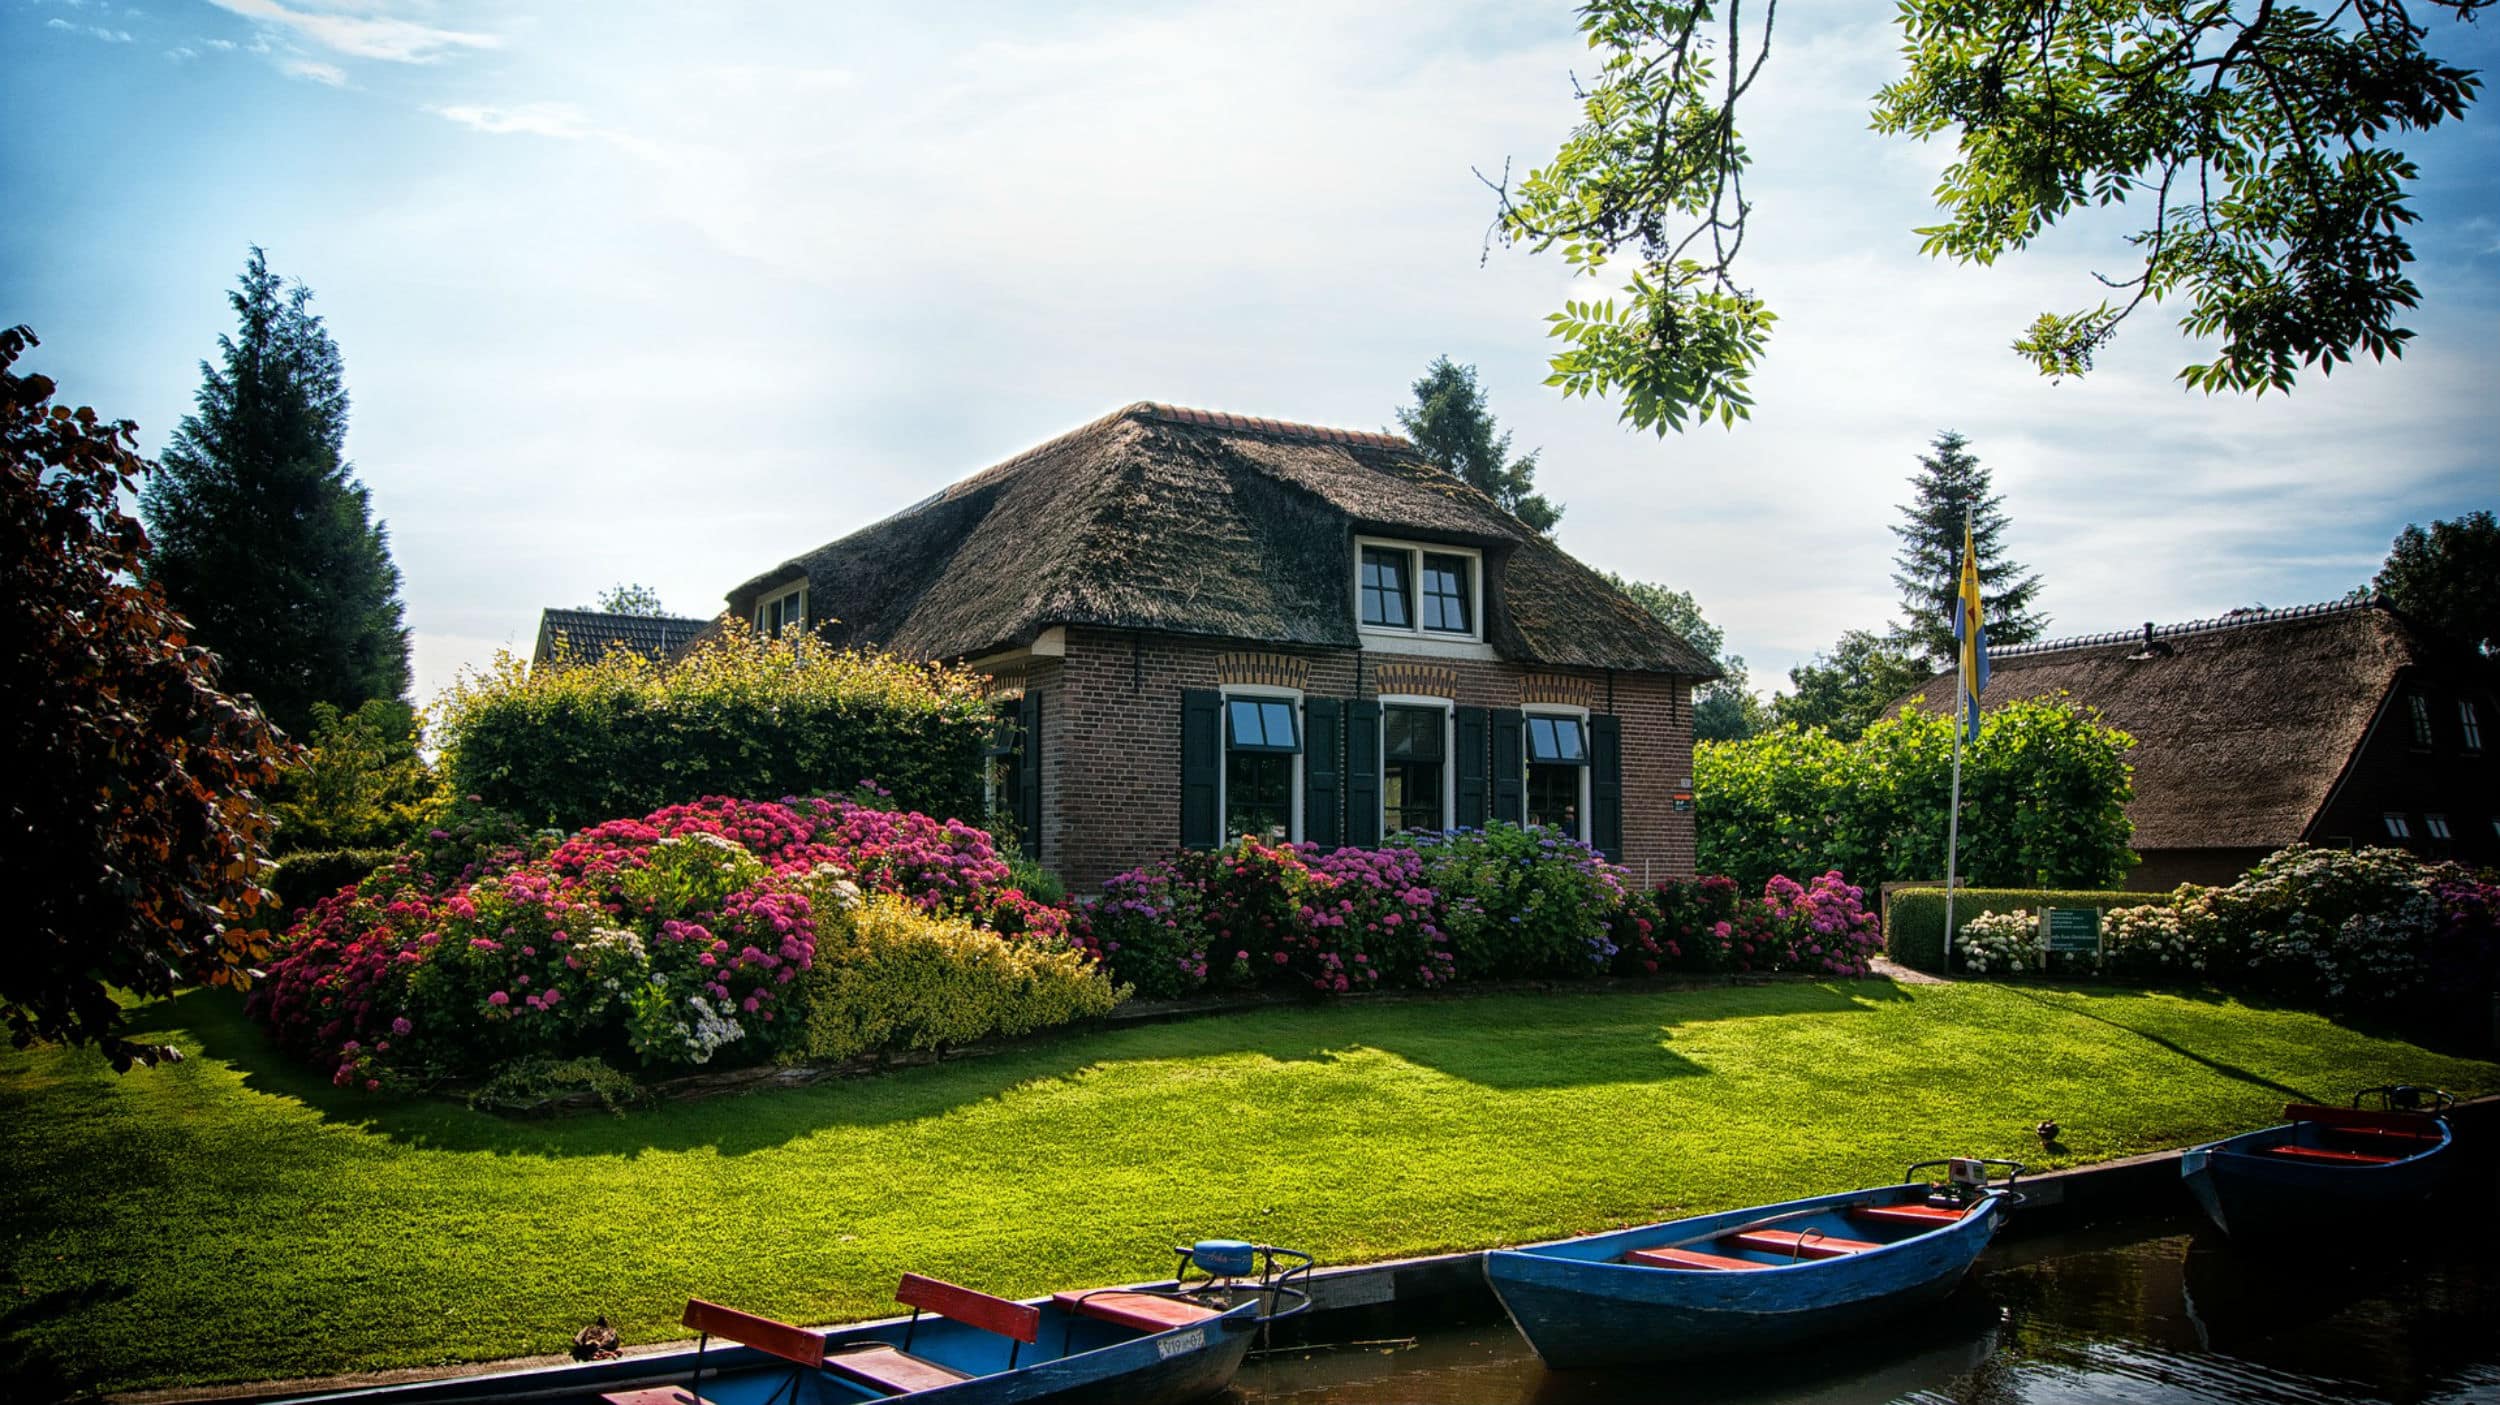 Ferienhaus in Holland mieten: großer Spaß im kleinen Land